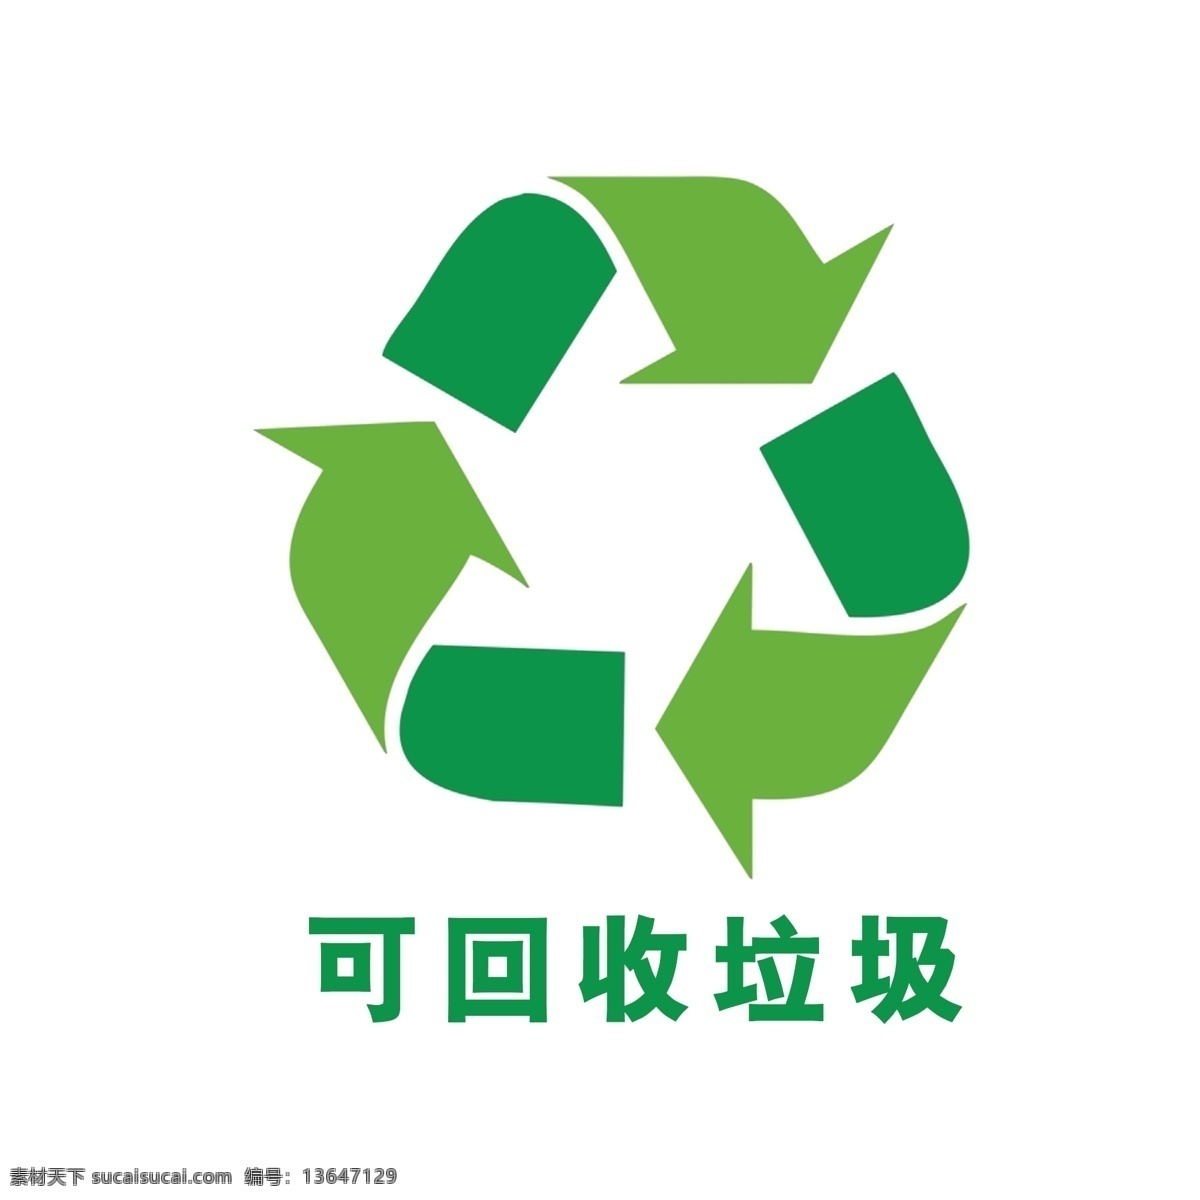 回收 垃圾 可回收 可回收垃圾 绿色 垃圾回收